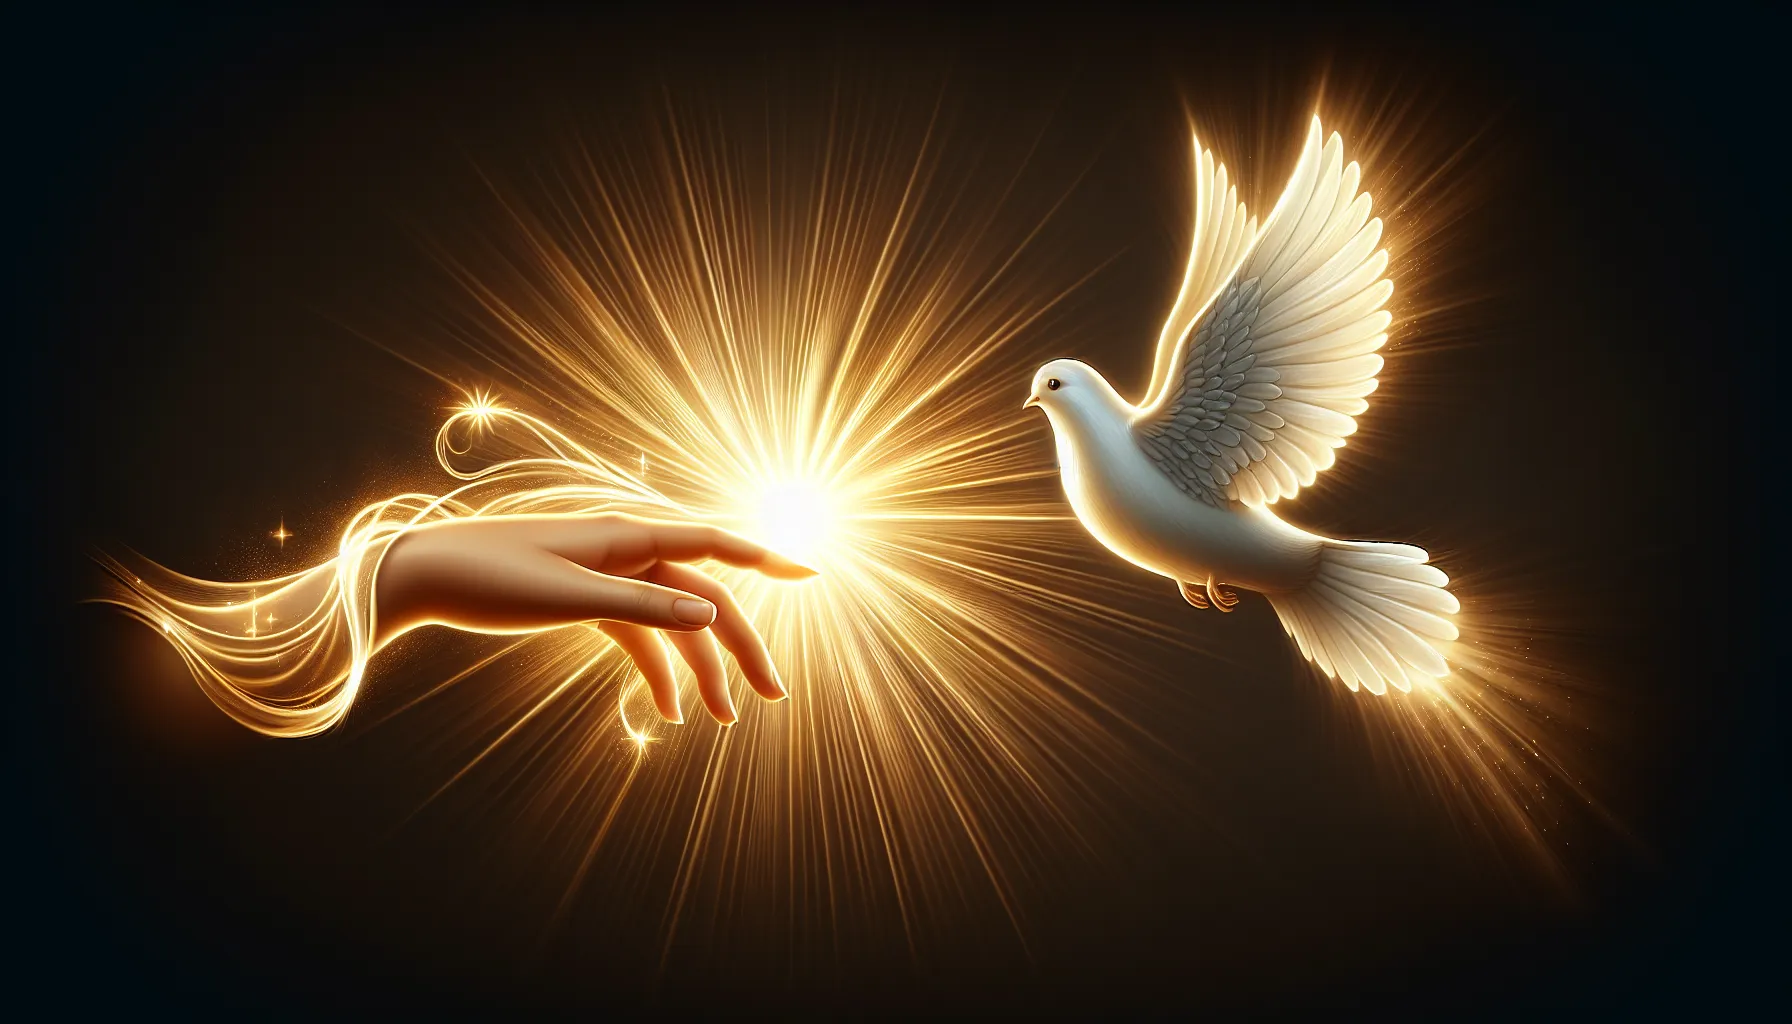 Representación visual de la relación entre el Espíritu Santo y la consolación divina